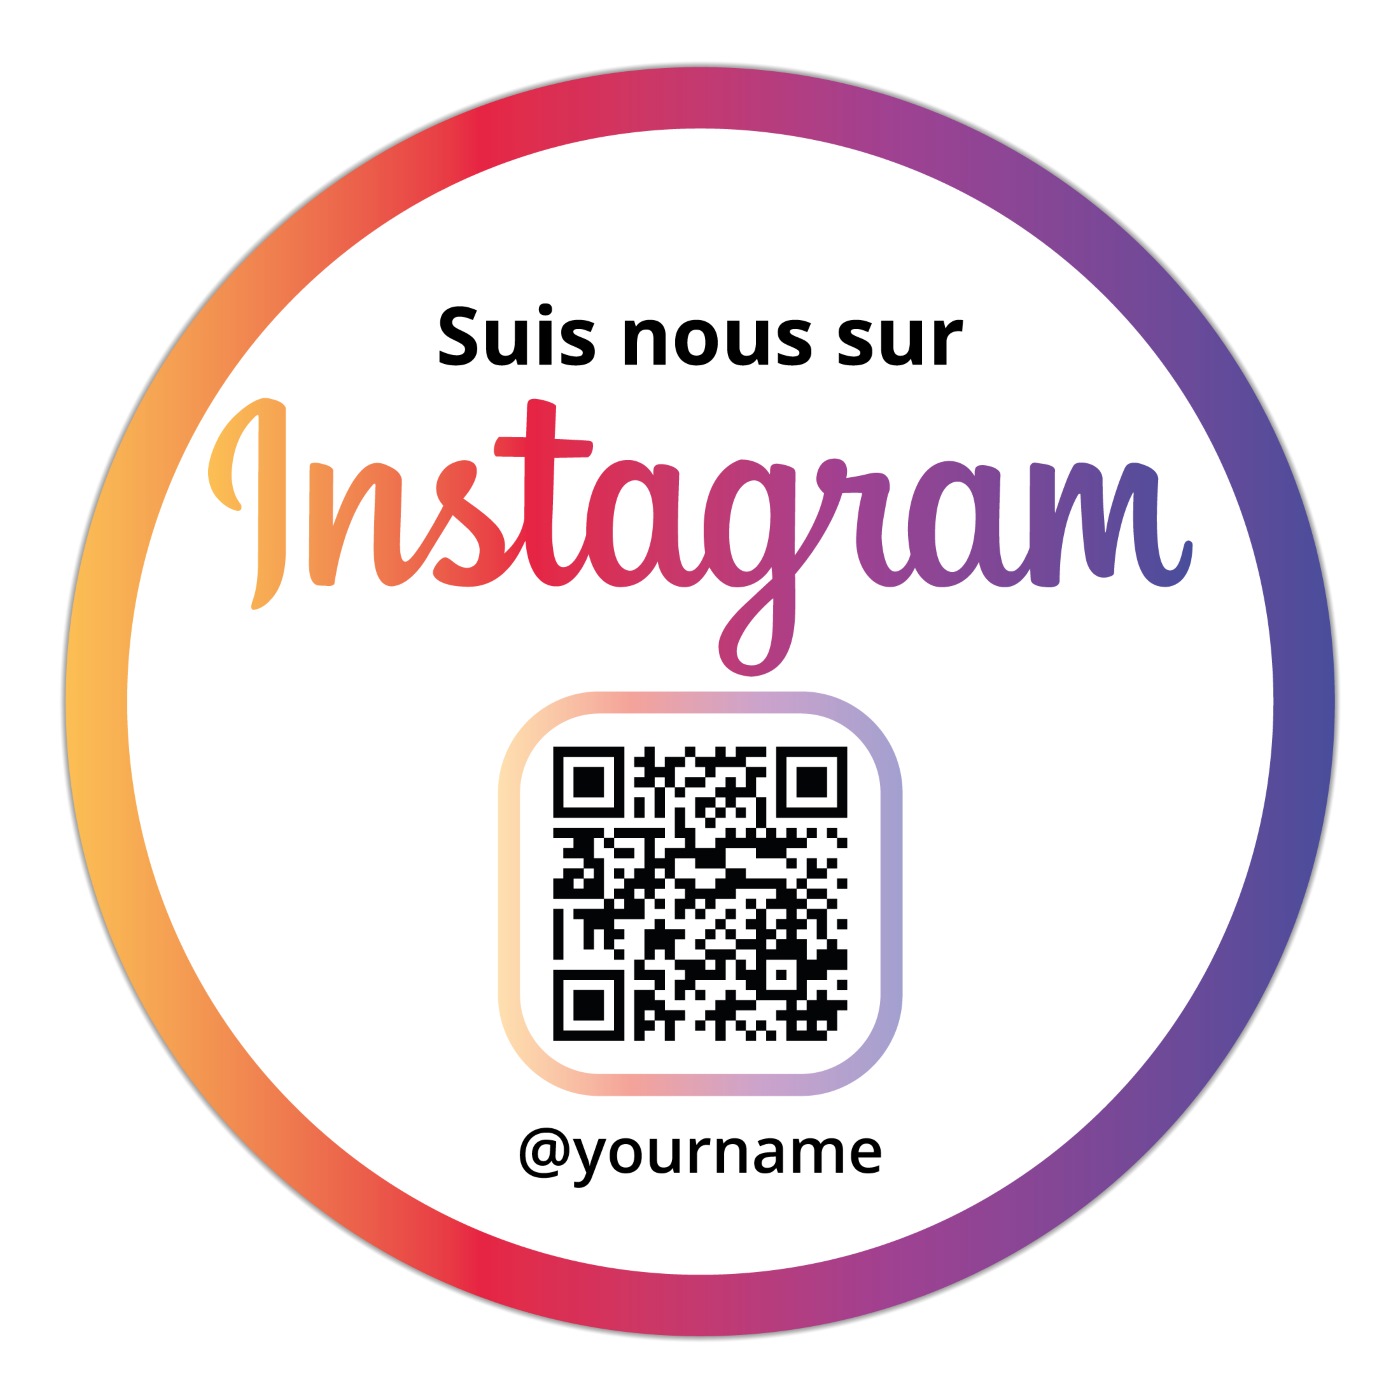 Suis-nous sur Instagram Sticker Clean